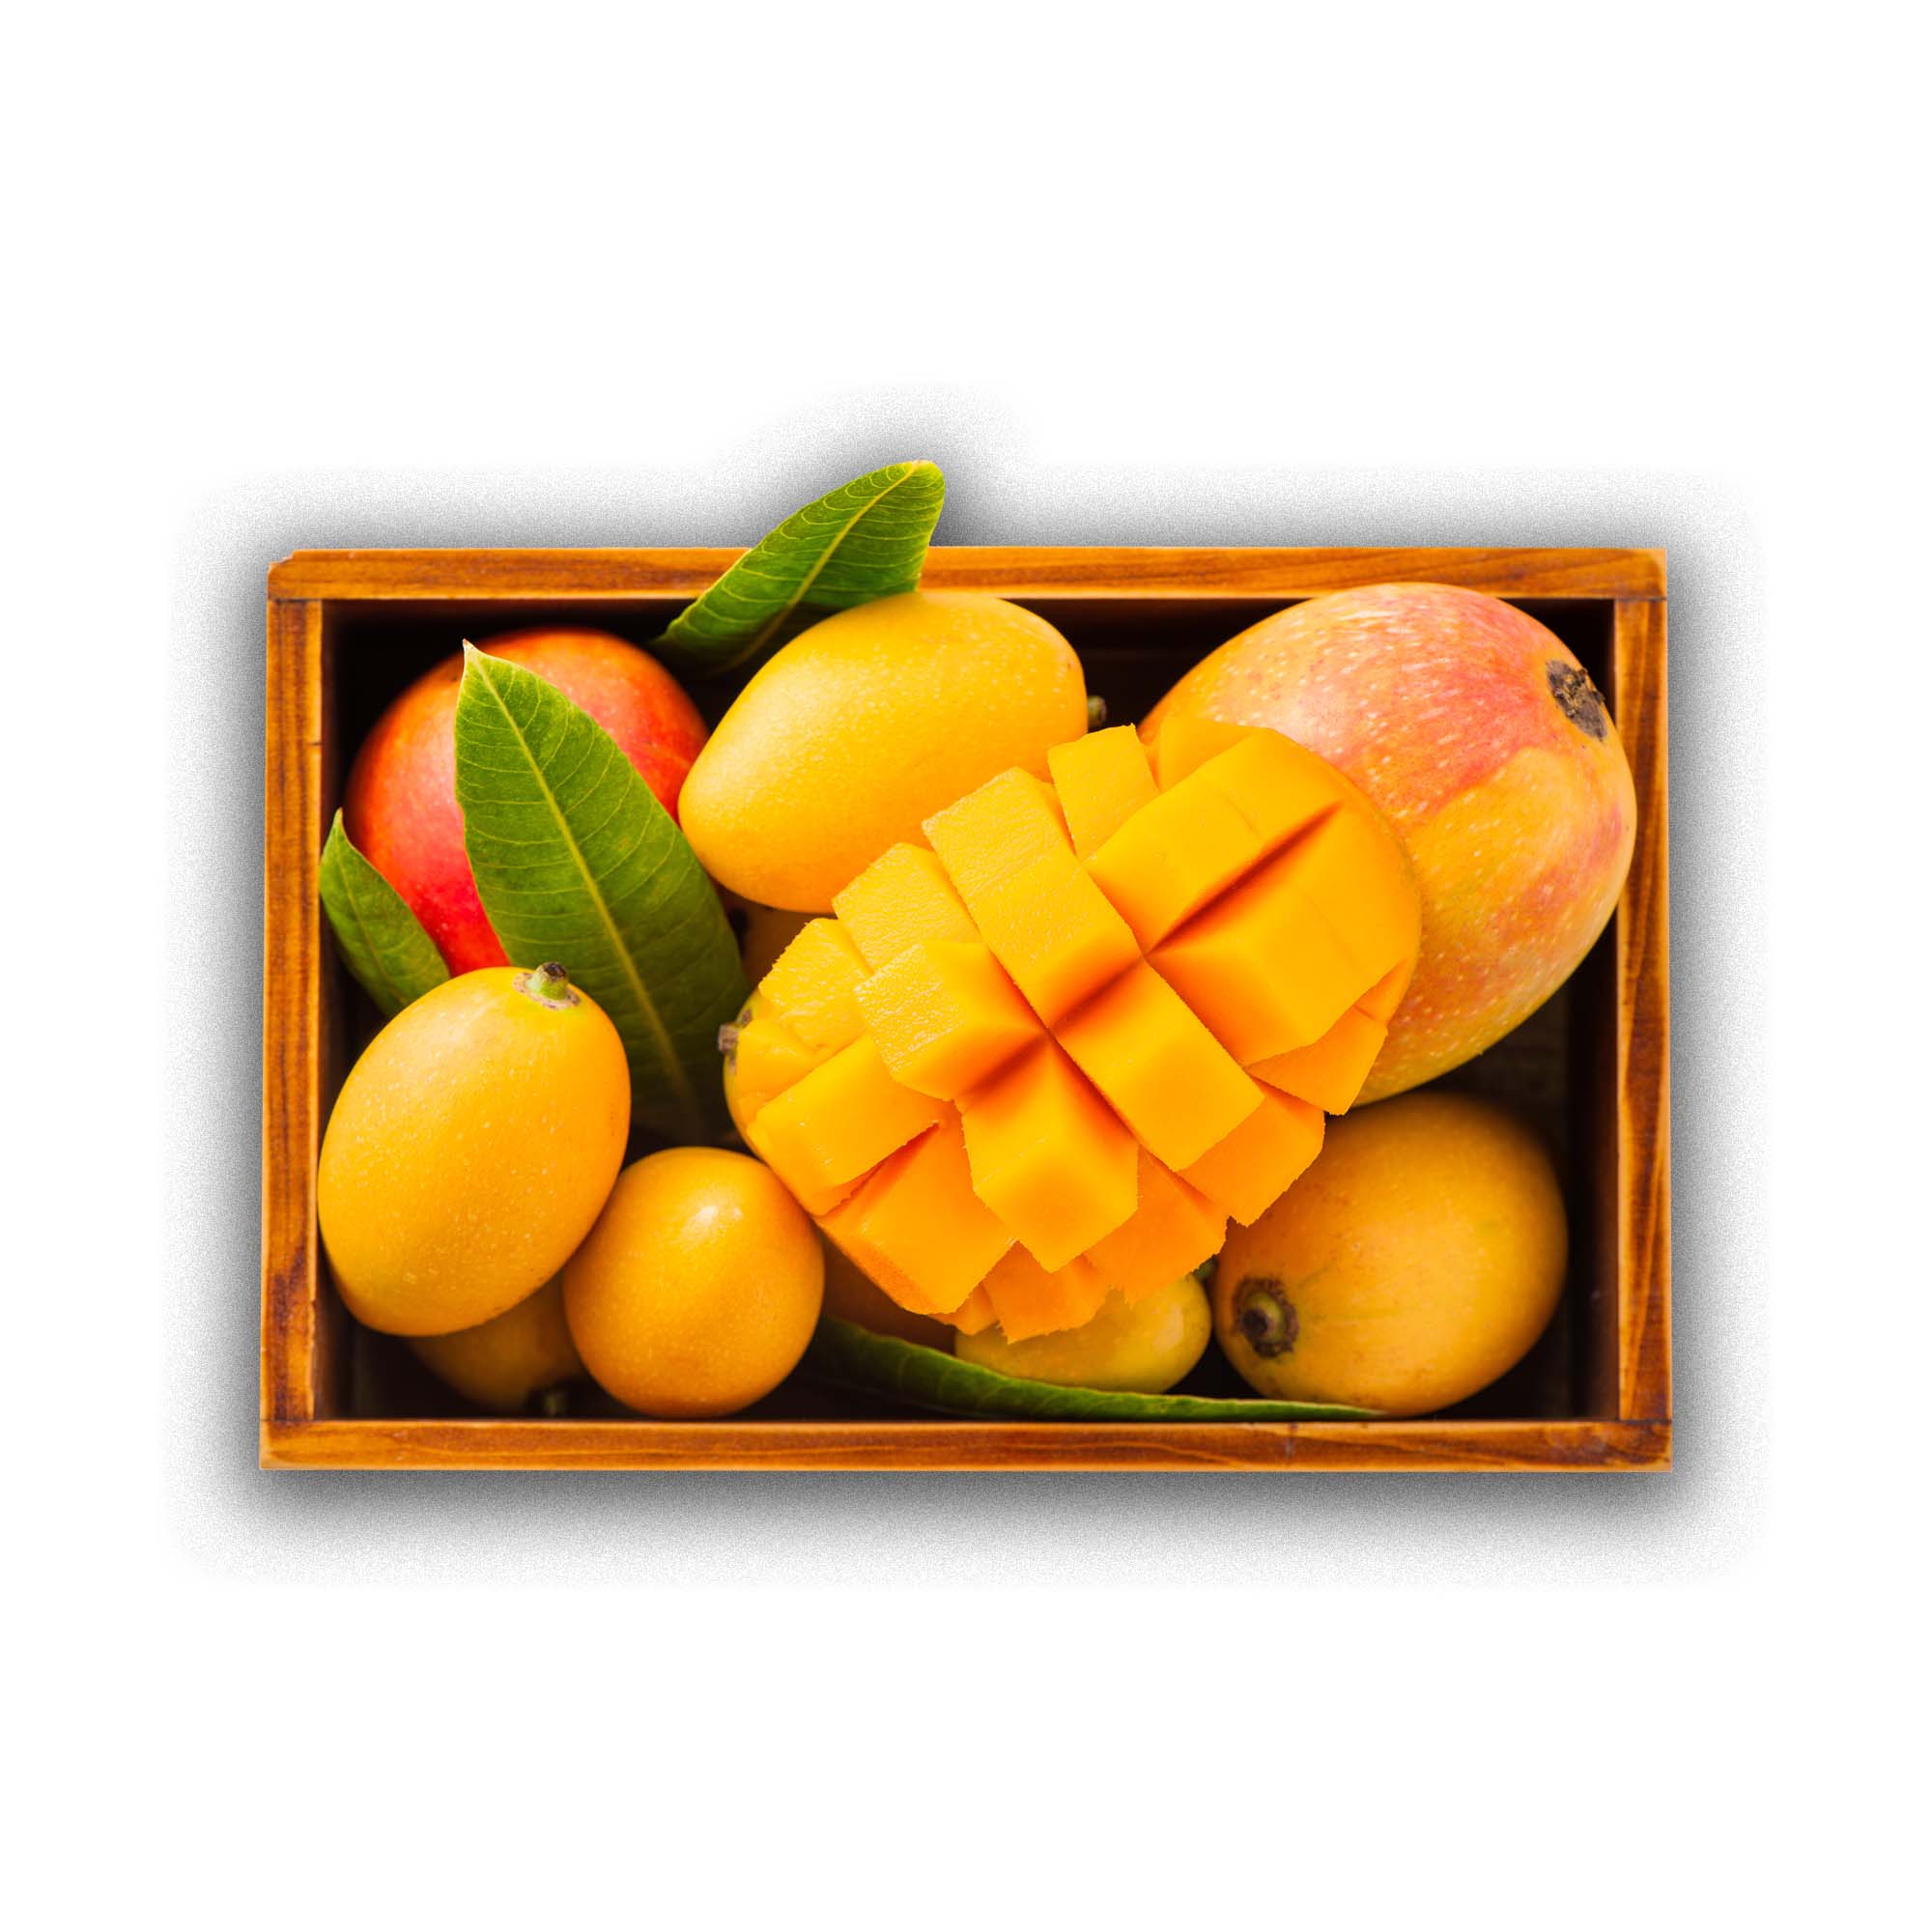 Mango Selection Box | Exotic Fruits - Rare & Tropical Exotic Fruit Shop UK